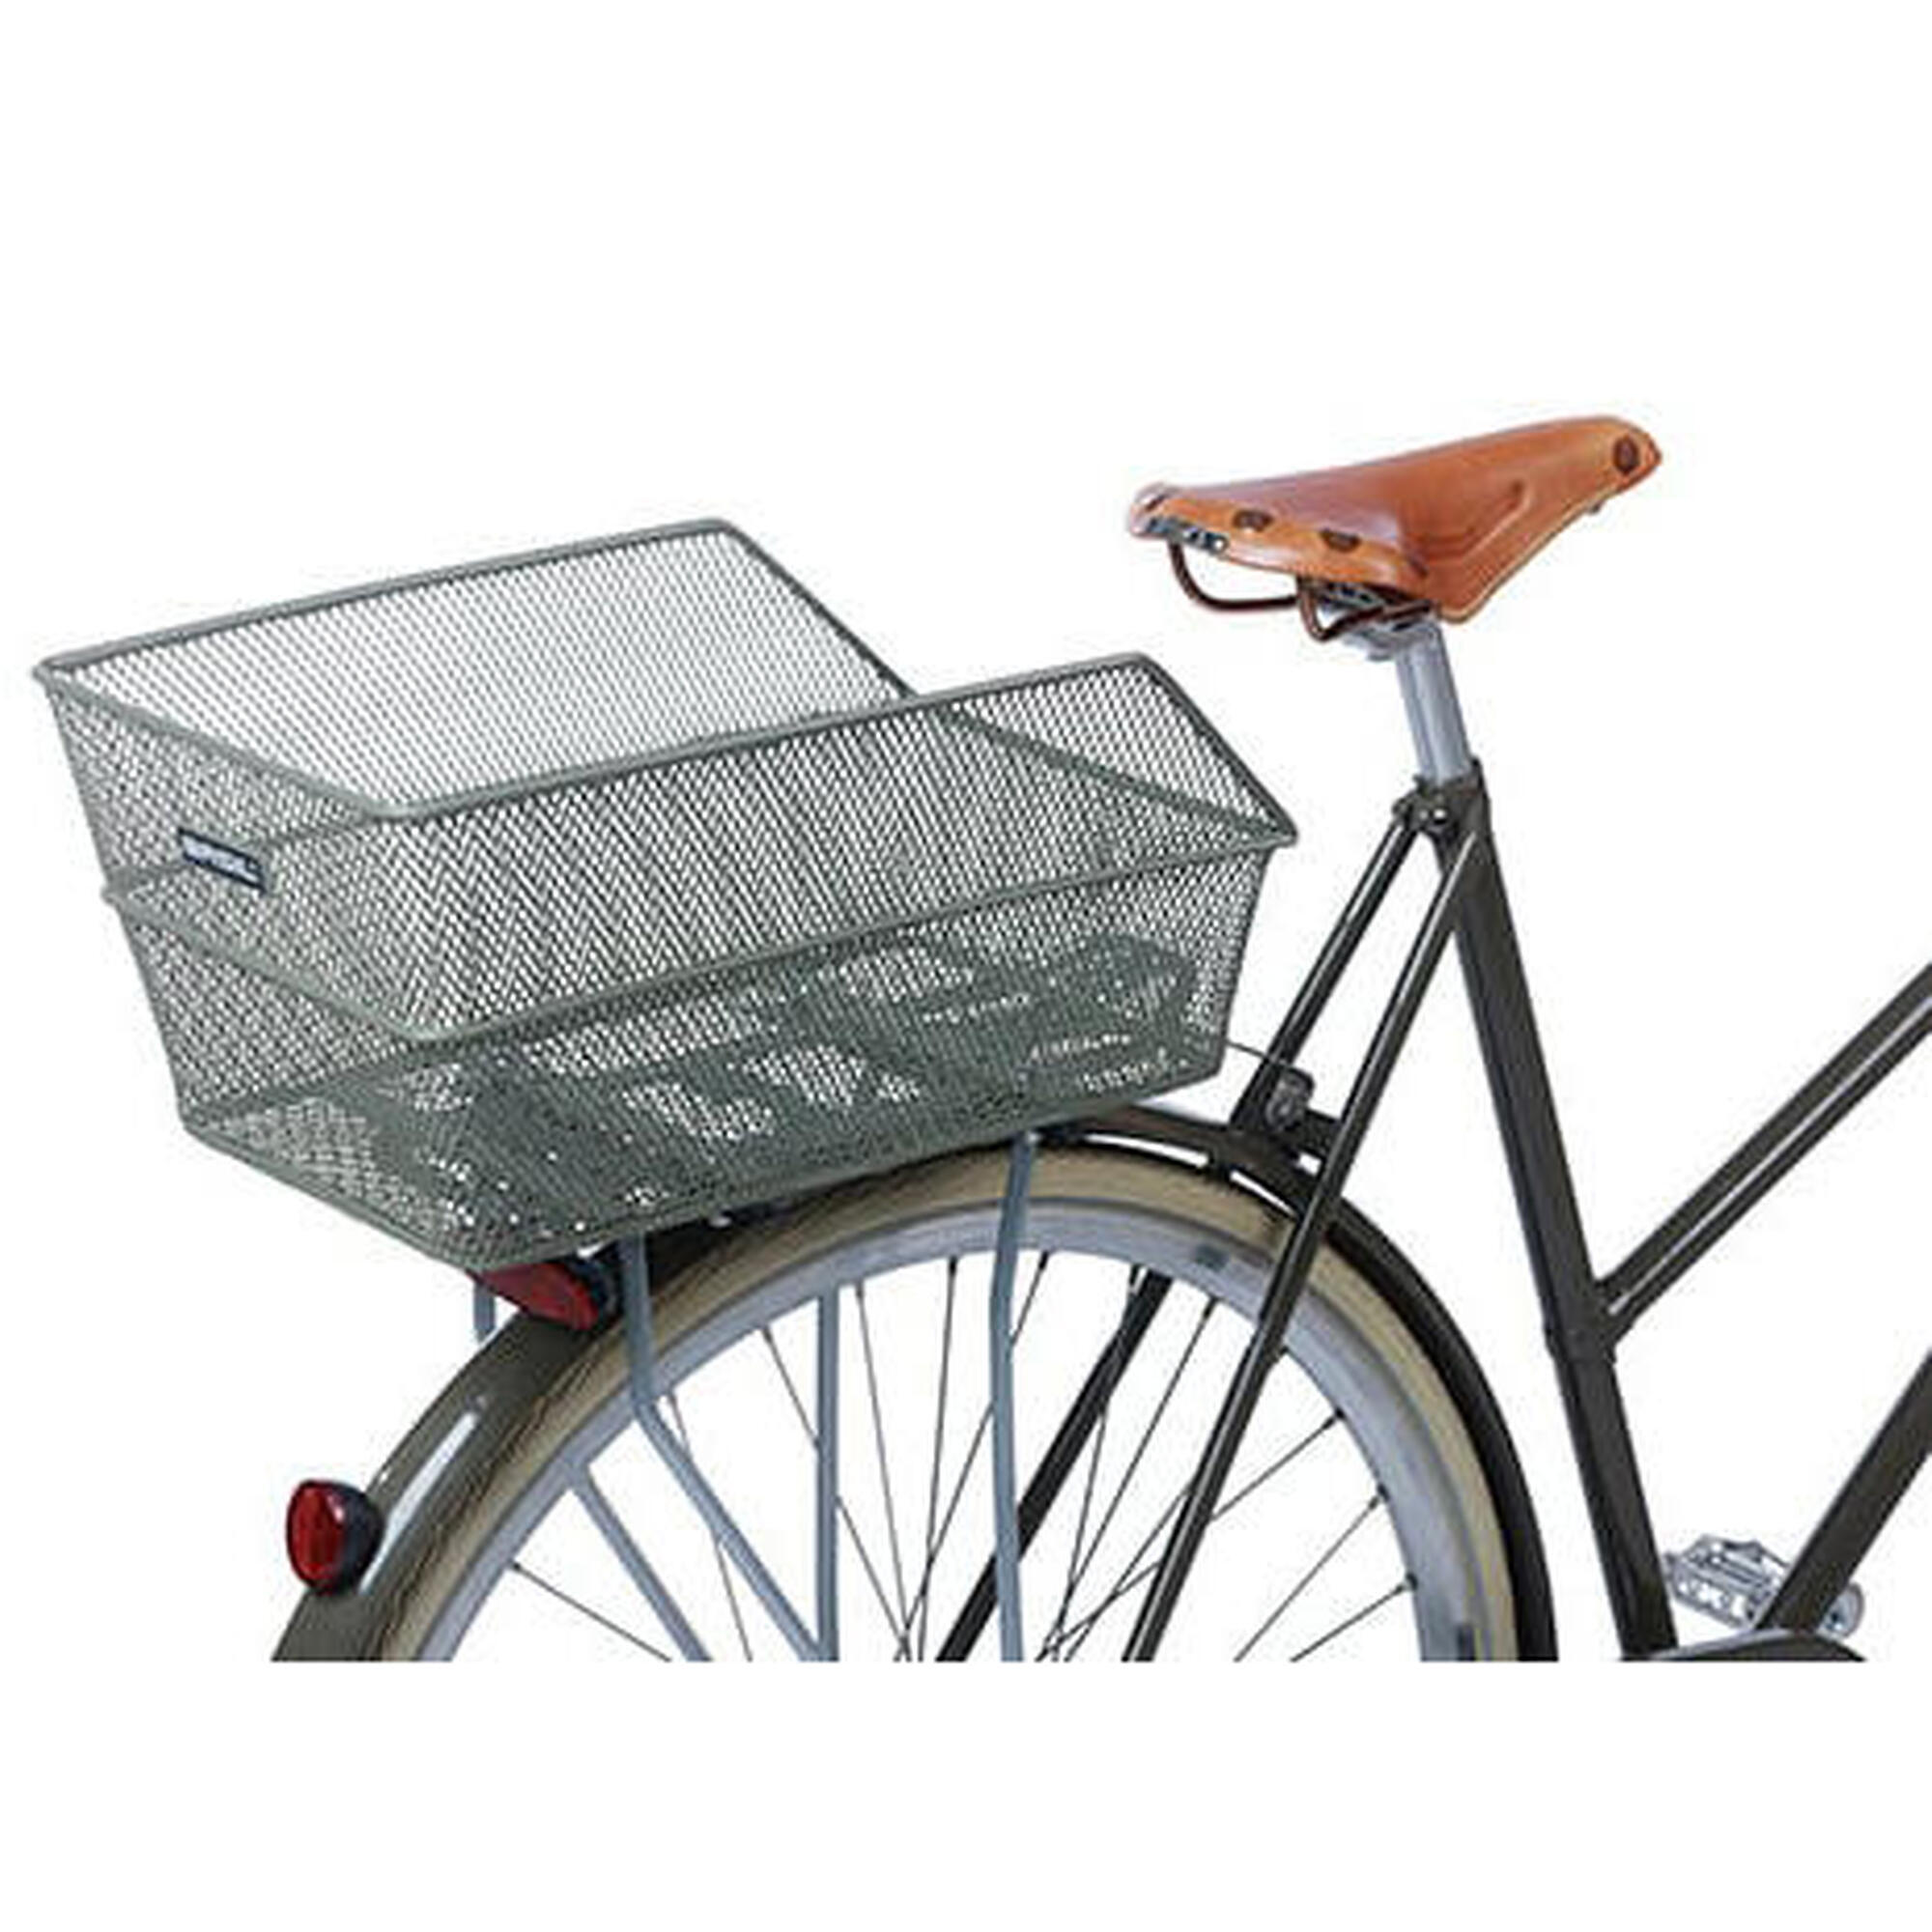 Panier à vélo Cento FM avec fixation fixe 38 x 24 x 11 cm - vert olive